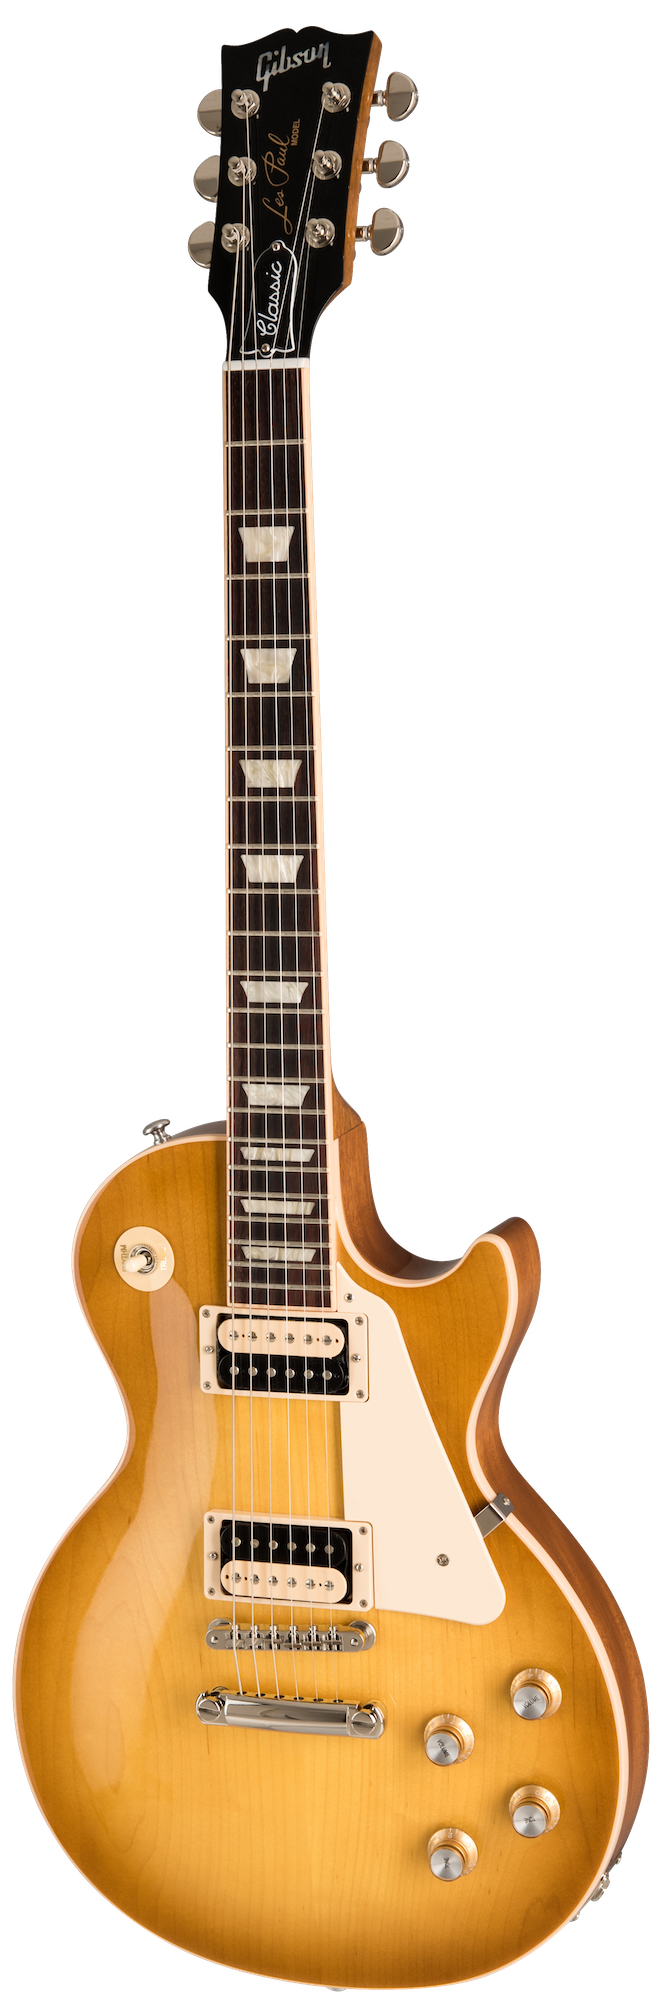 Billede af Gibson Les Paul Classic Honeyburst